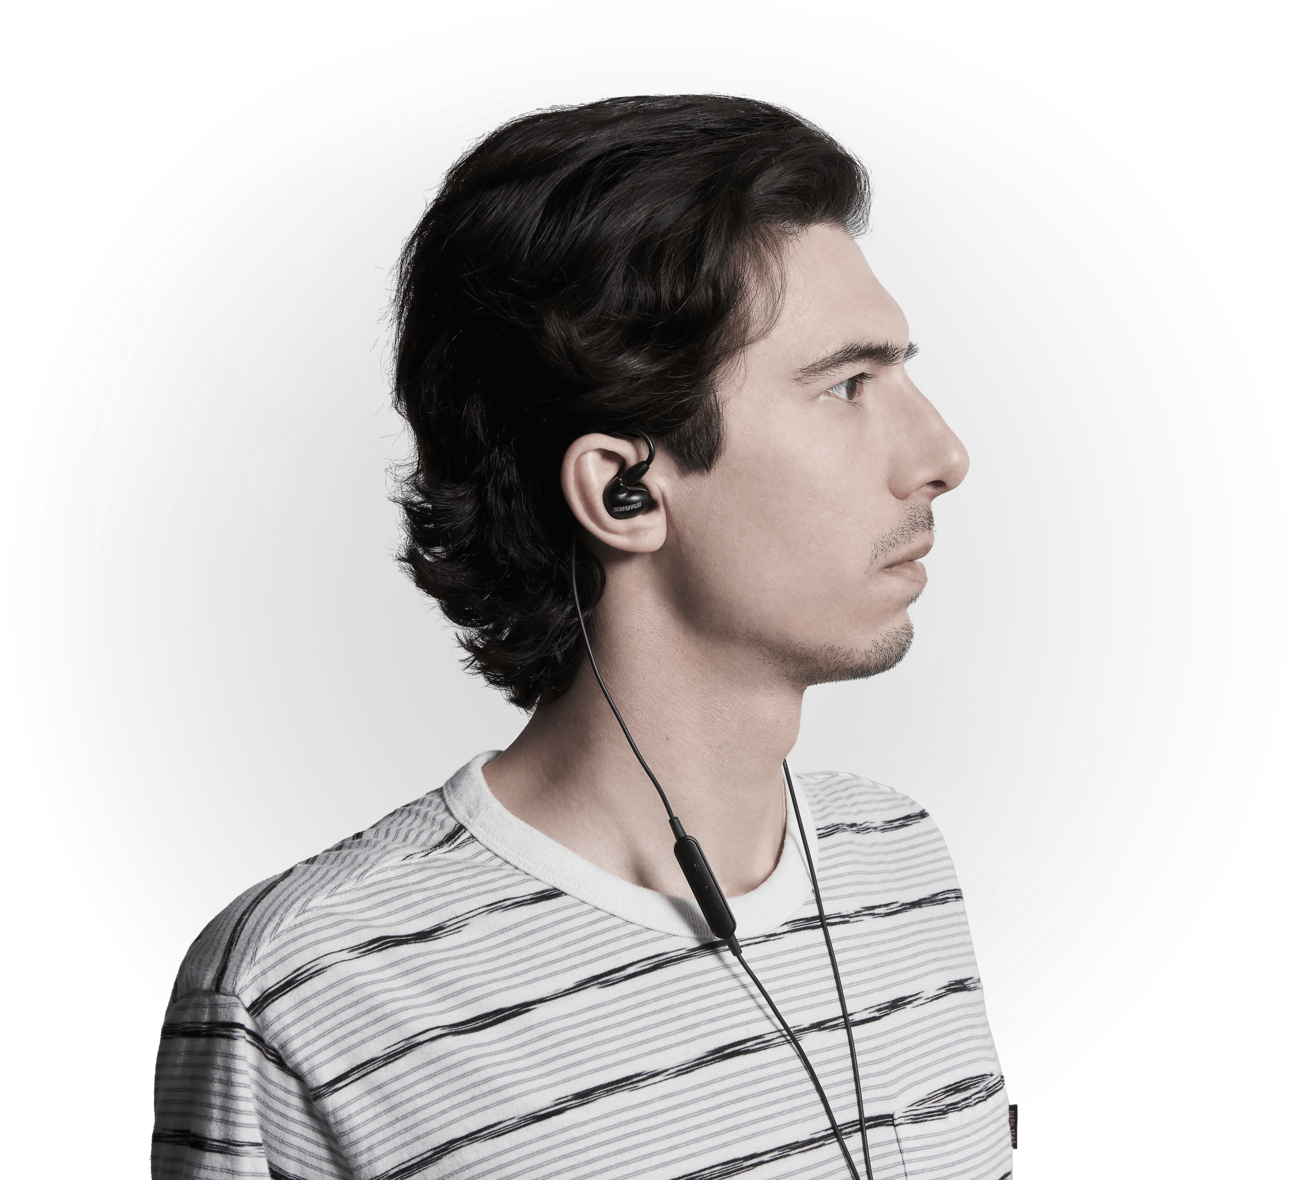 Shure Aonic 5 - Professionele In-ear Monitor oordopjes met afstandsbediening en microfoon -  Geretourneerd